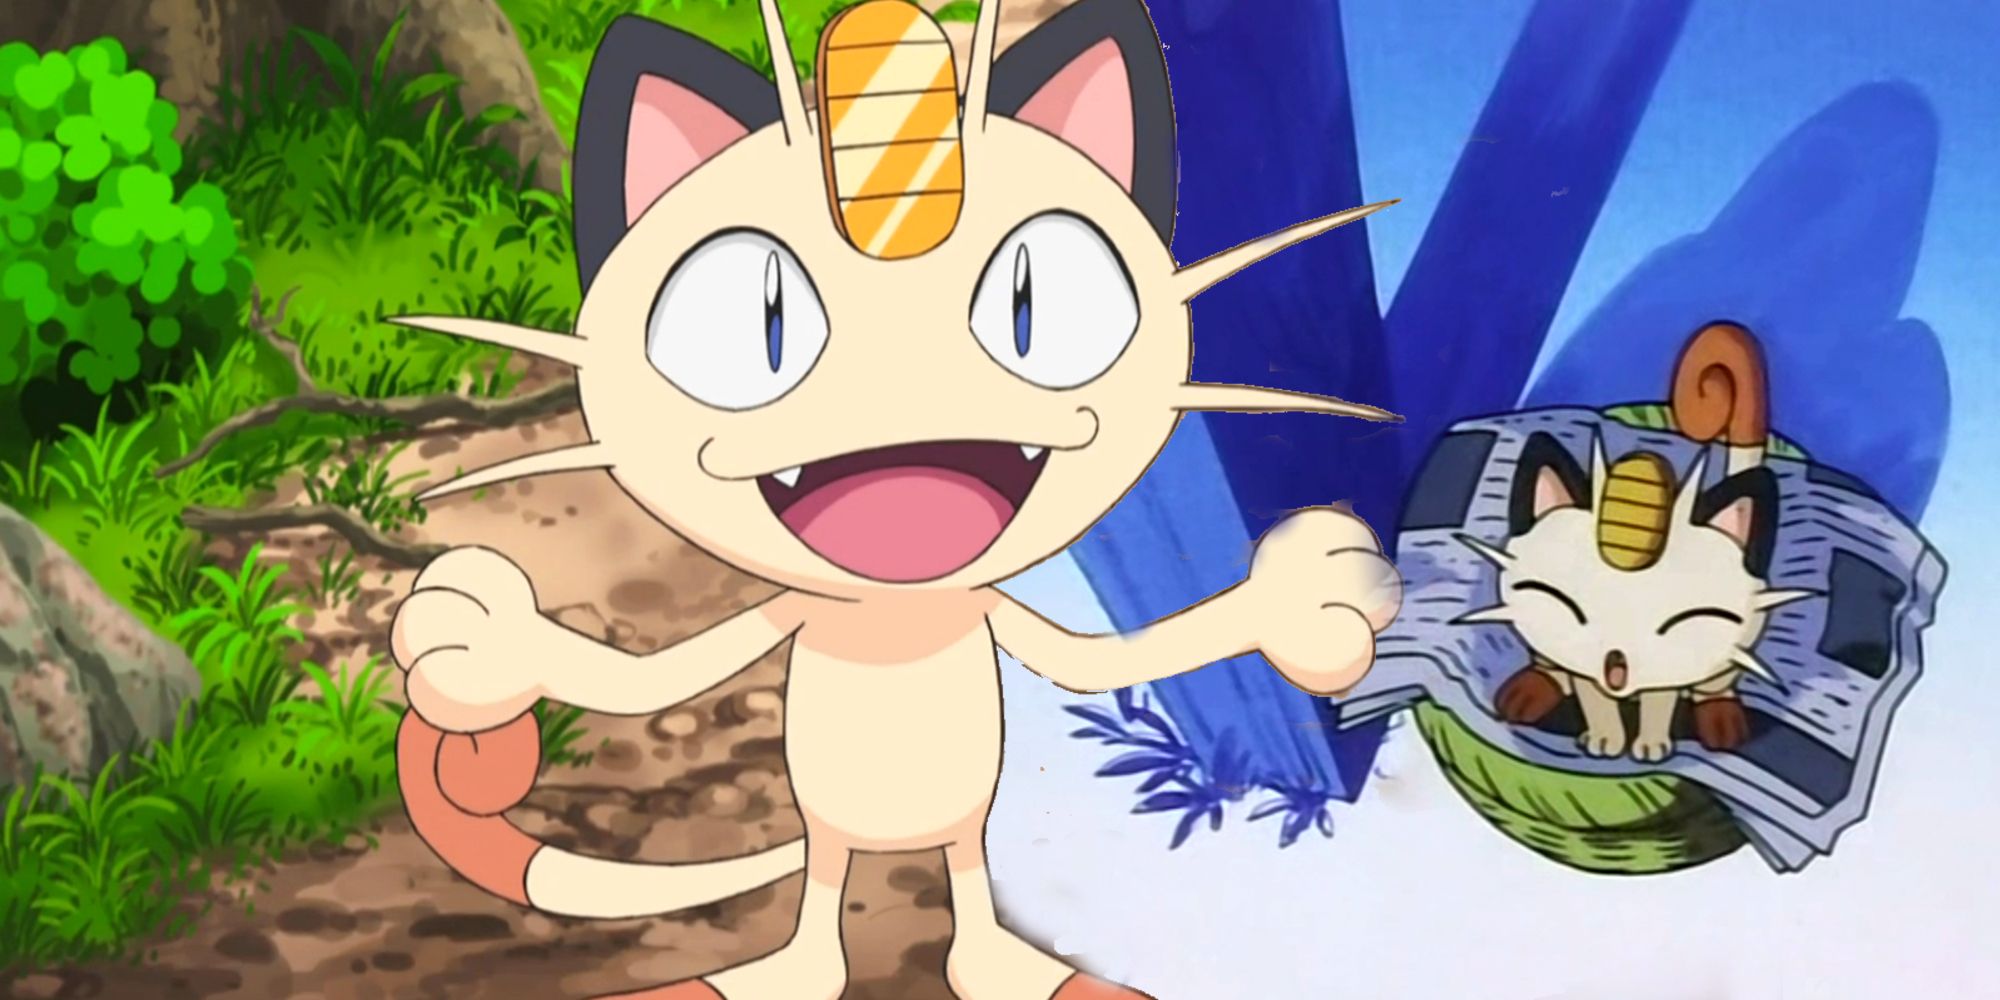 Meowth revela por que não tem Nariz - Pokémon (Dublado) 